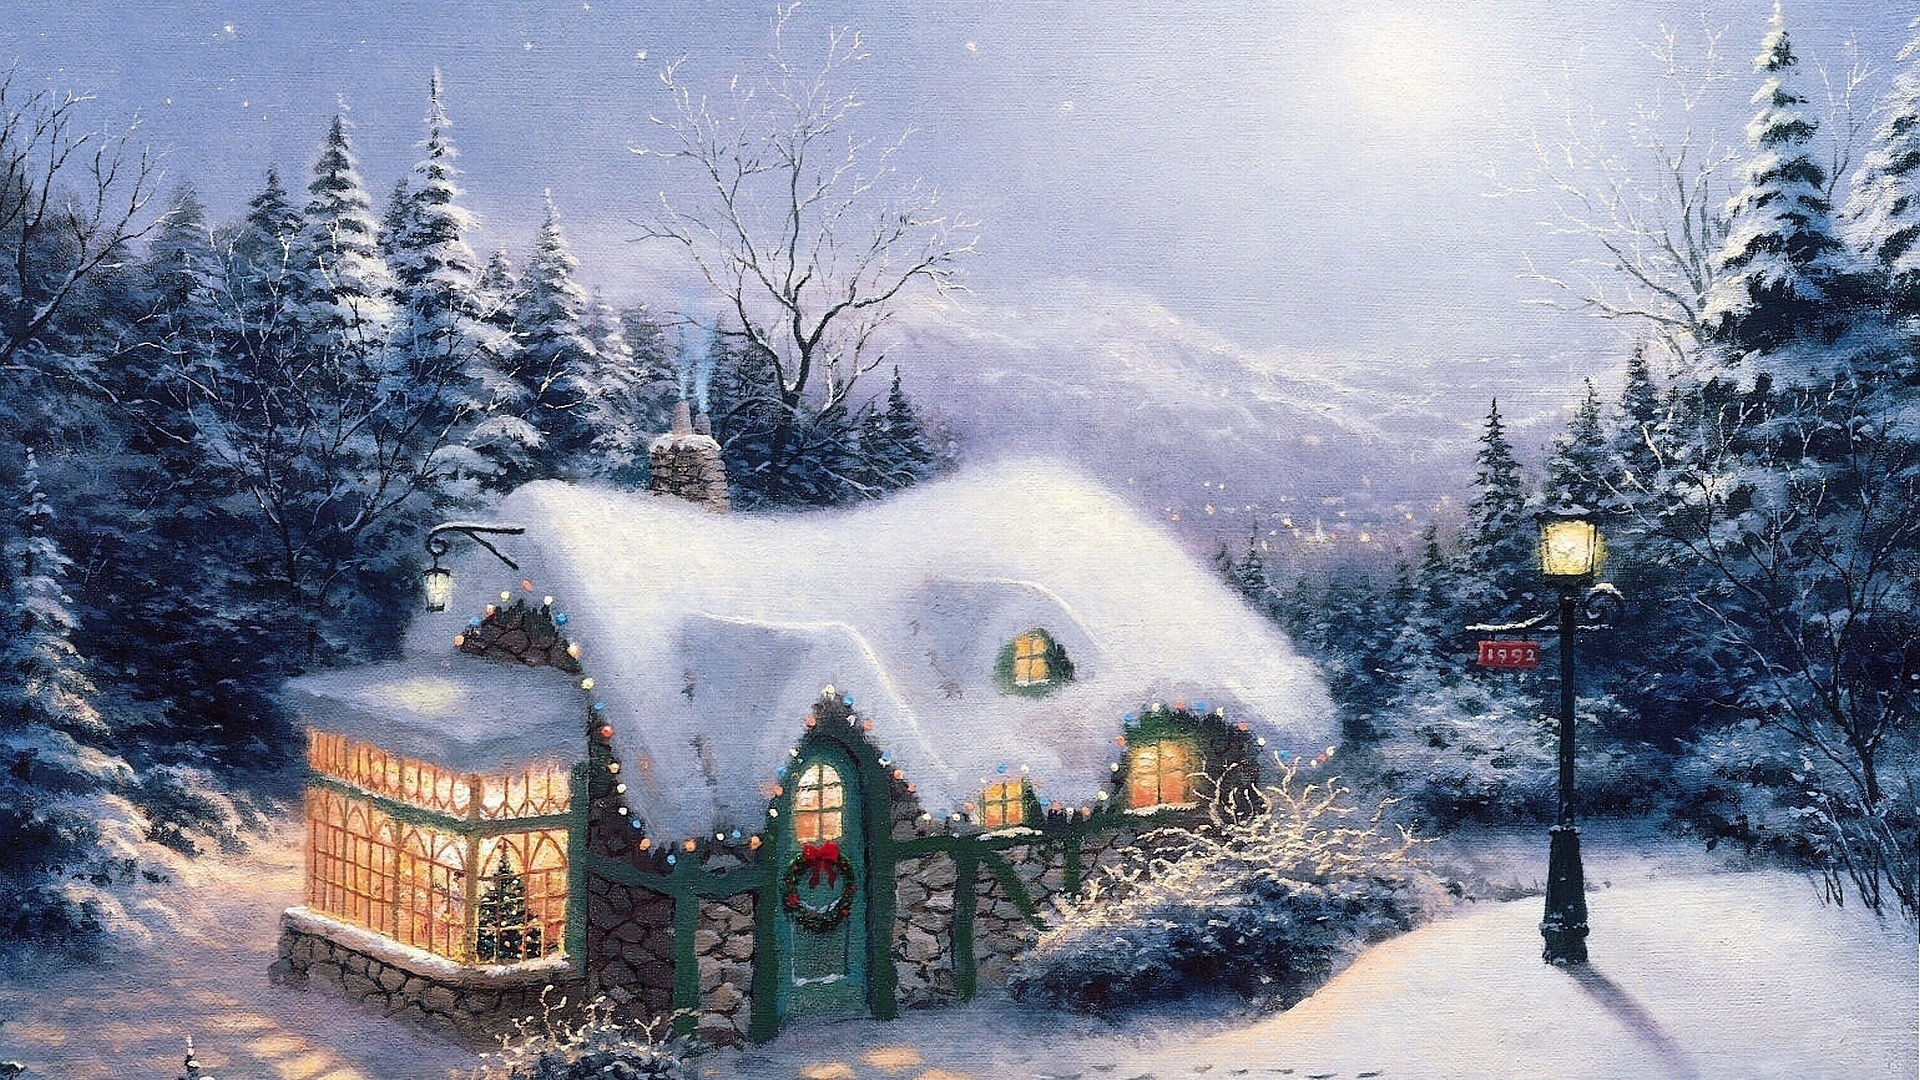 Wallpaper Weihnachten Neues Jahr Eine Stille Nacht Ein Haus Aus